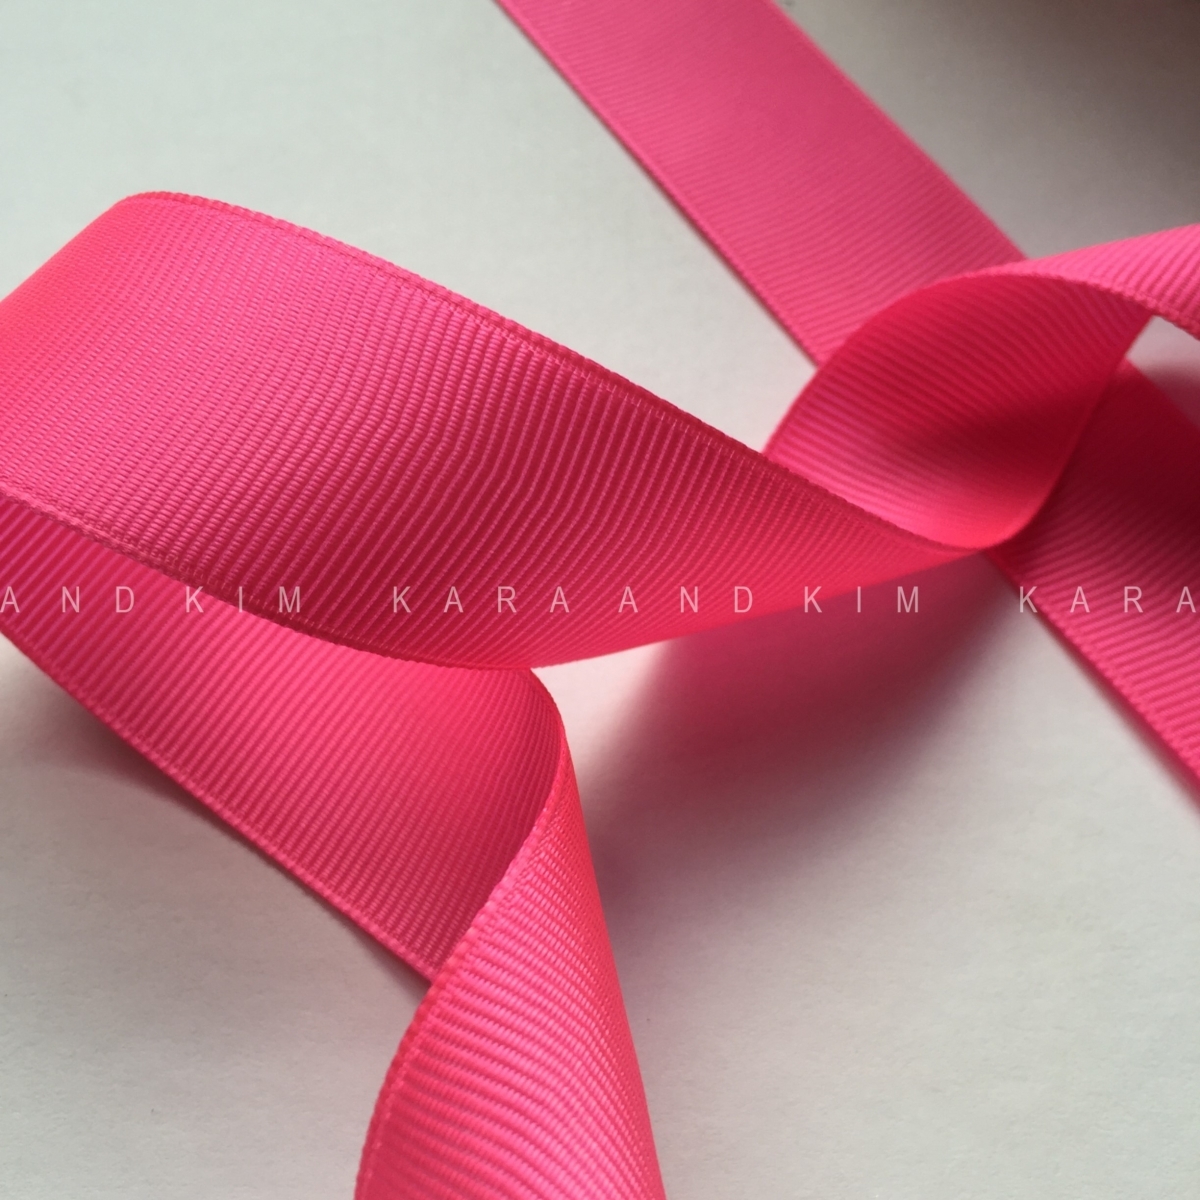 Shocking Pink Grosgrain Ribbon